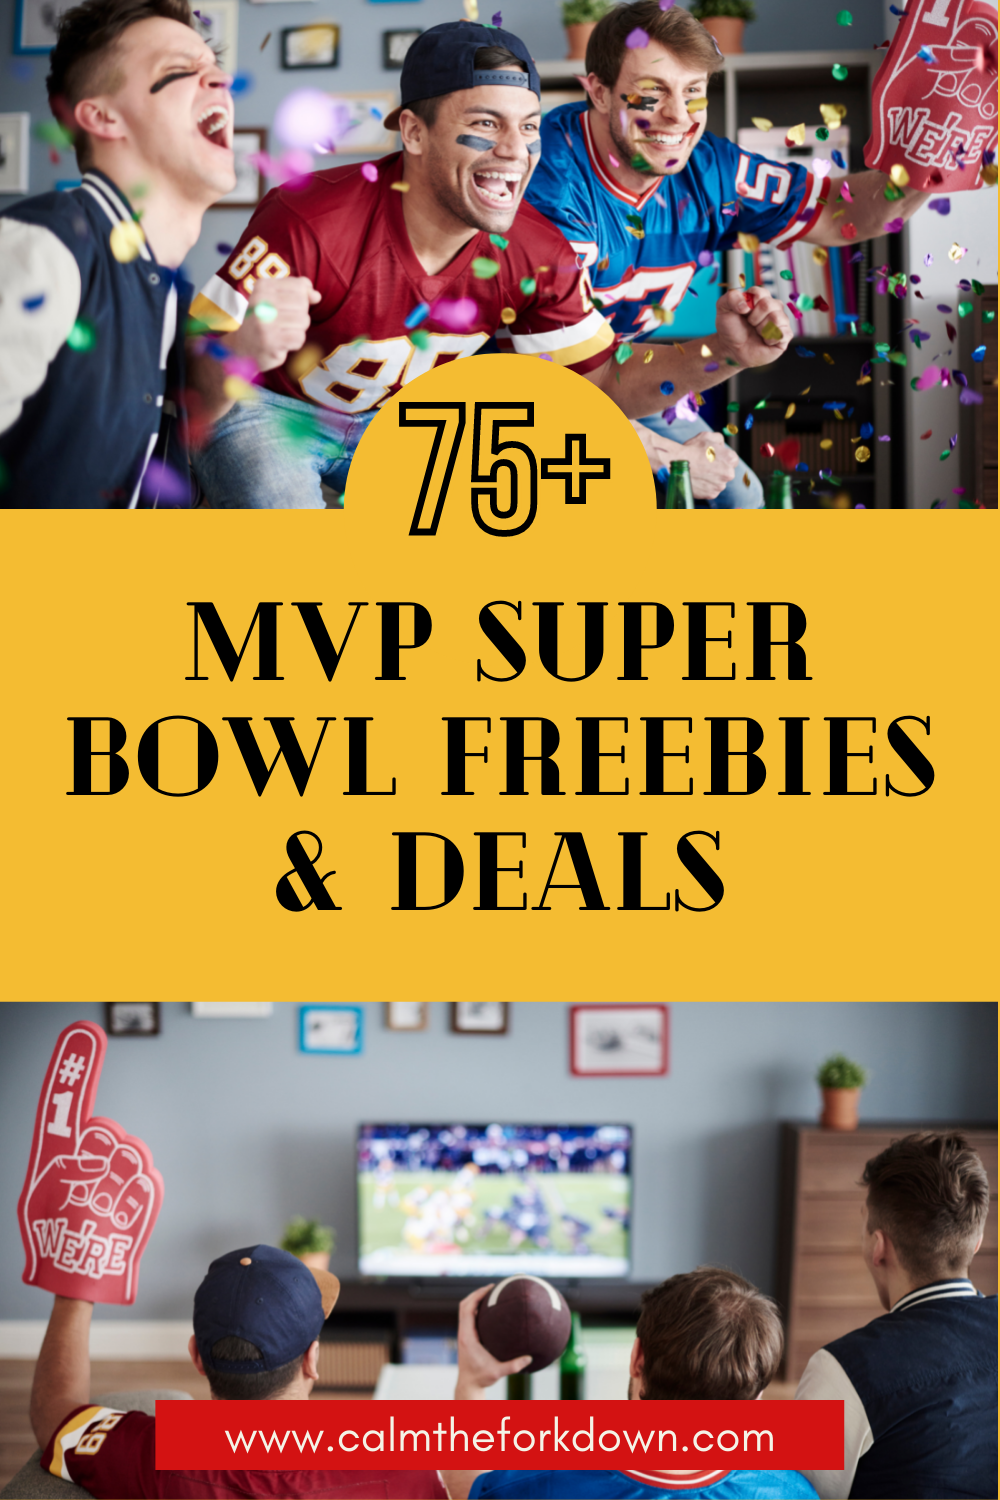 75+ MVP Super Bowl Freebies & Deals